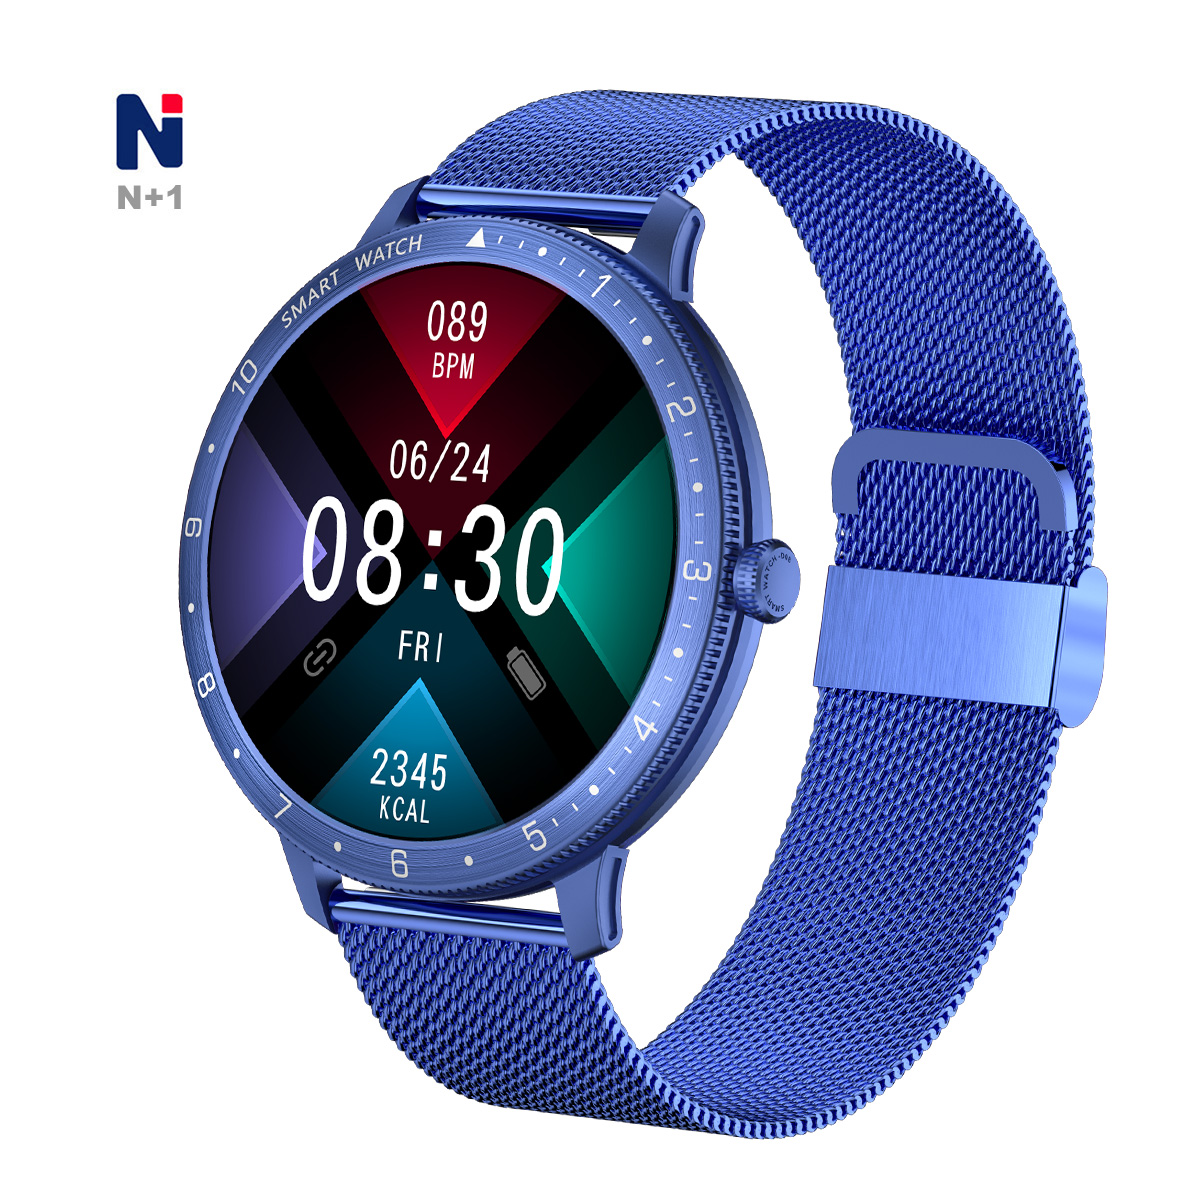 Tout nouveau Charger Smart Watch avec GPS et imperméable pour les enfants NDW06